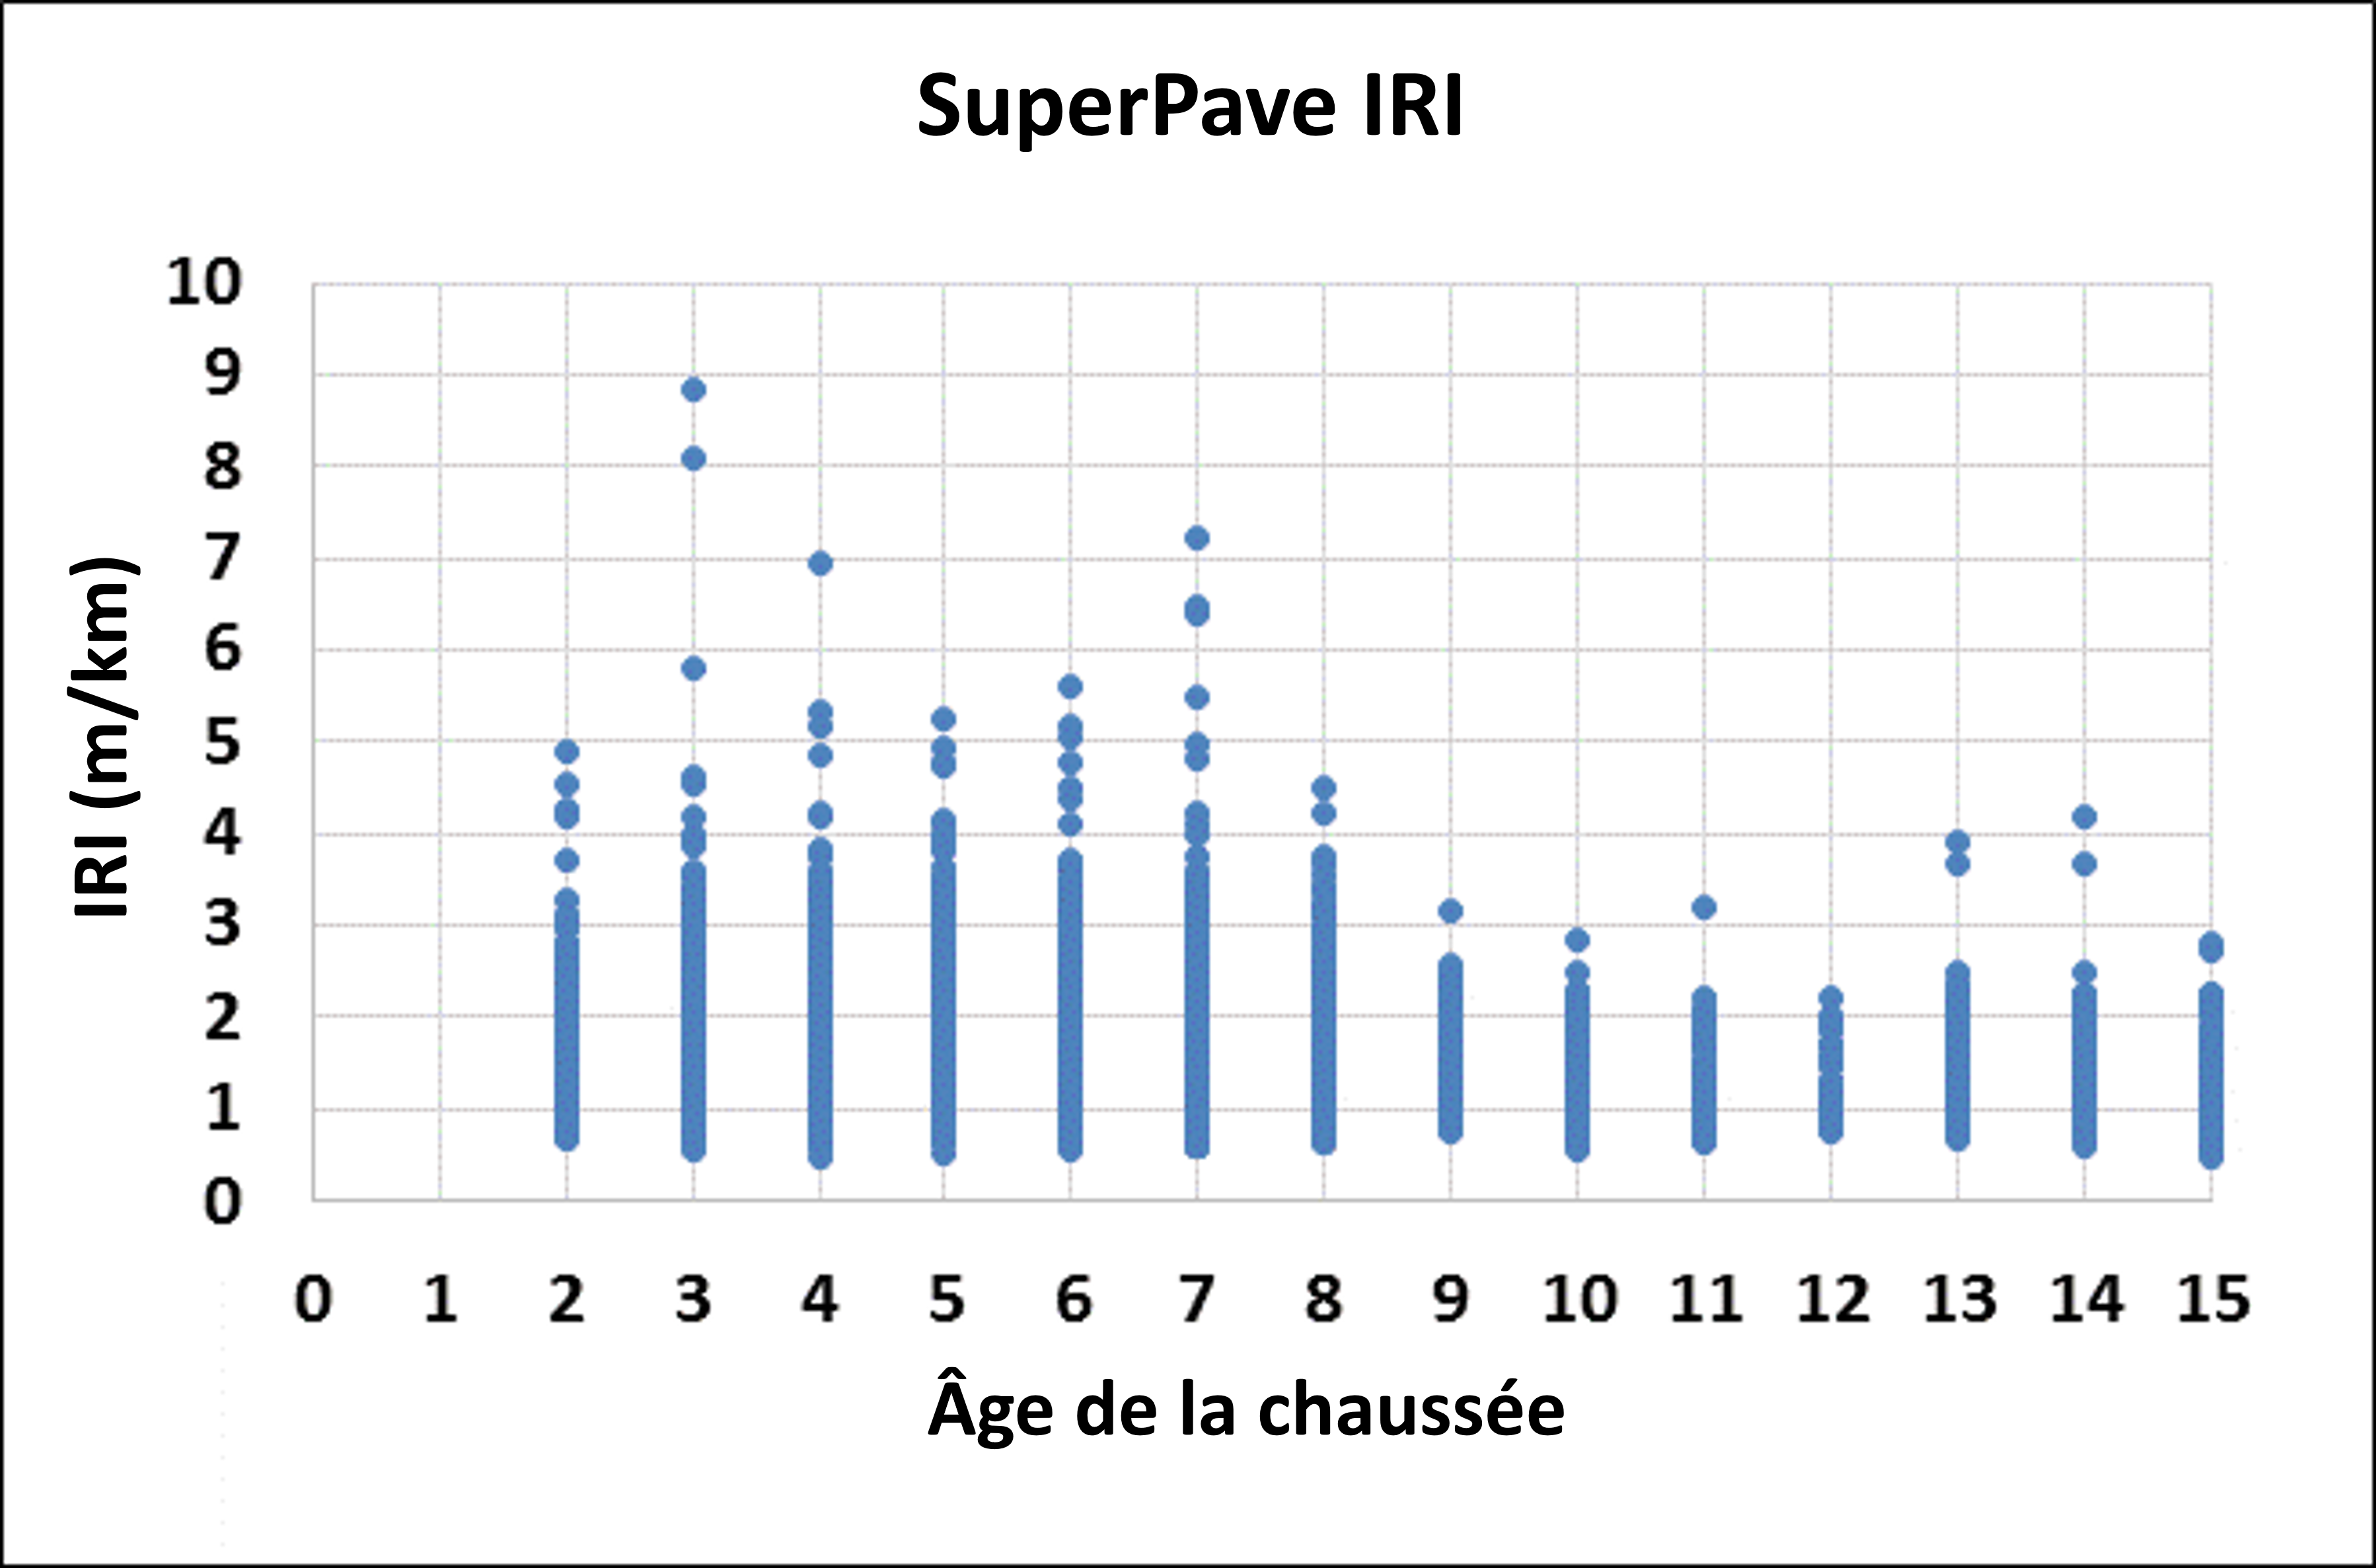 Figure 2.2.10.2 Croissement age / IRI